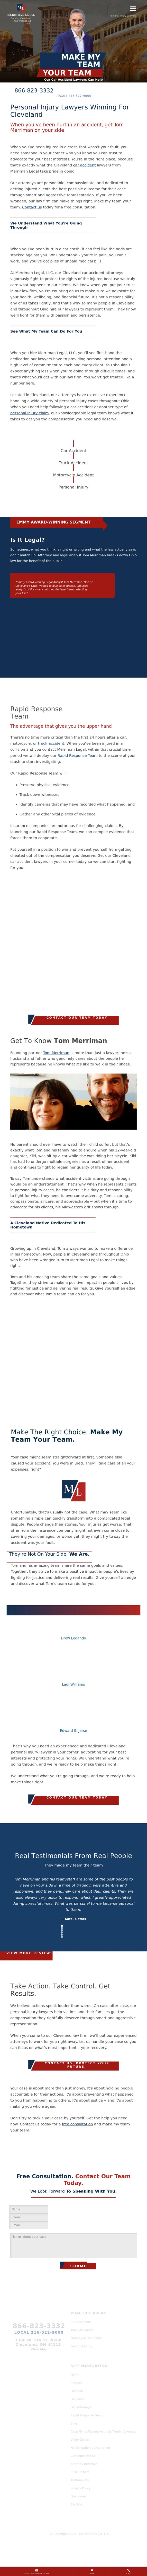 Landskroner Grieco Merriman - Cleveland OH Lawyers